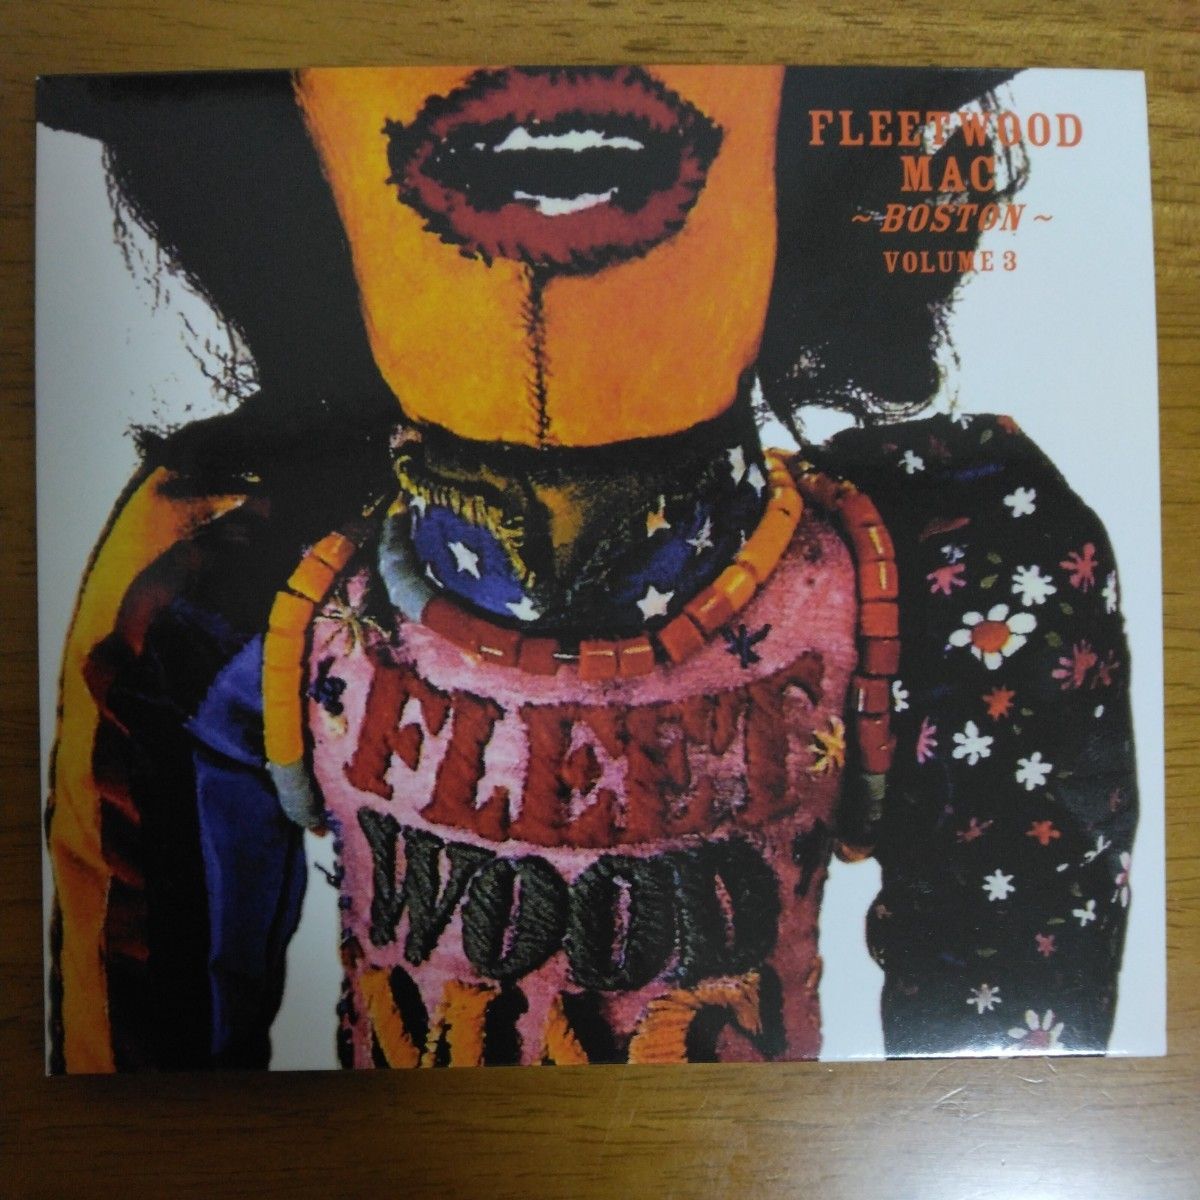 フリートウッド・マック / BOSTON TEA PARTY Part1・2・3 / ライブ盤 / 3CD / FLEETWOOD